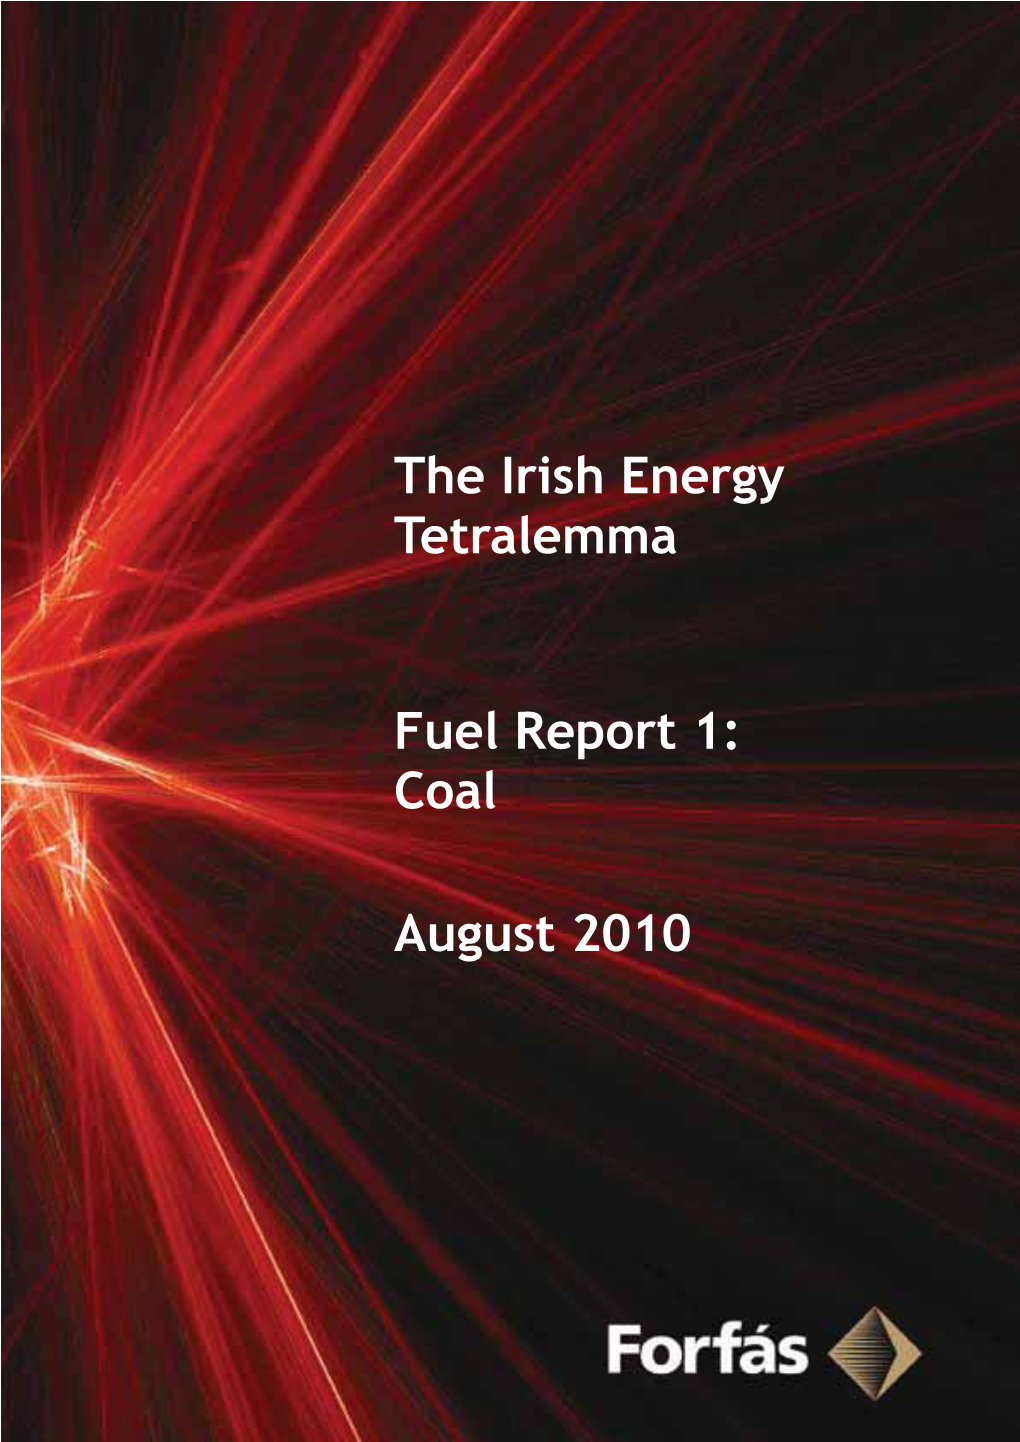 The Irish Energy Tetralemma